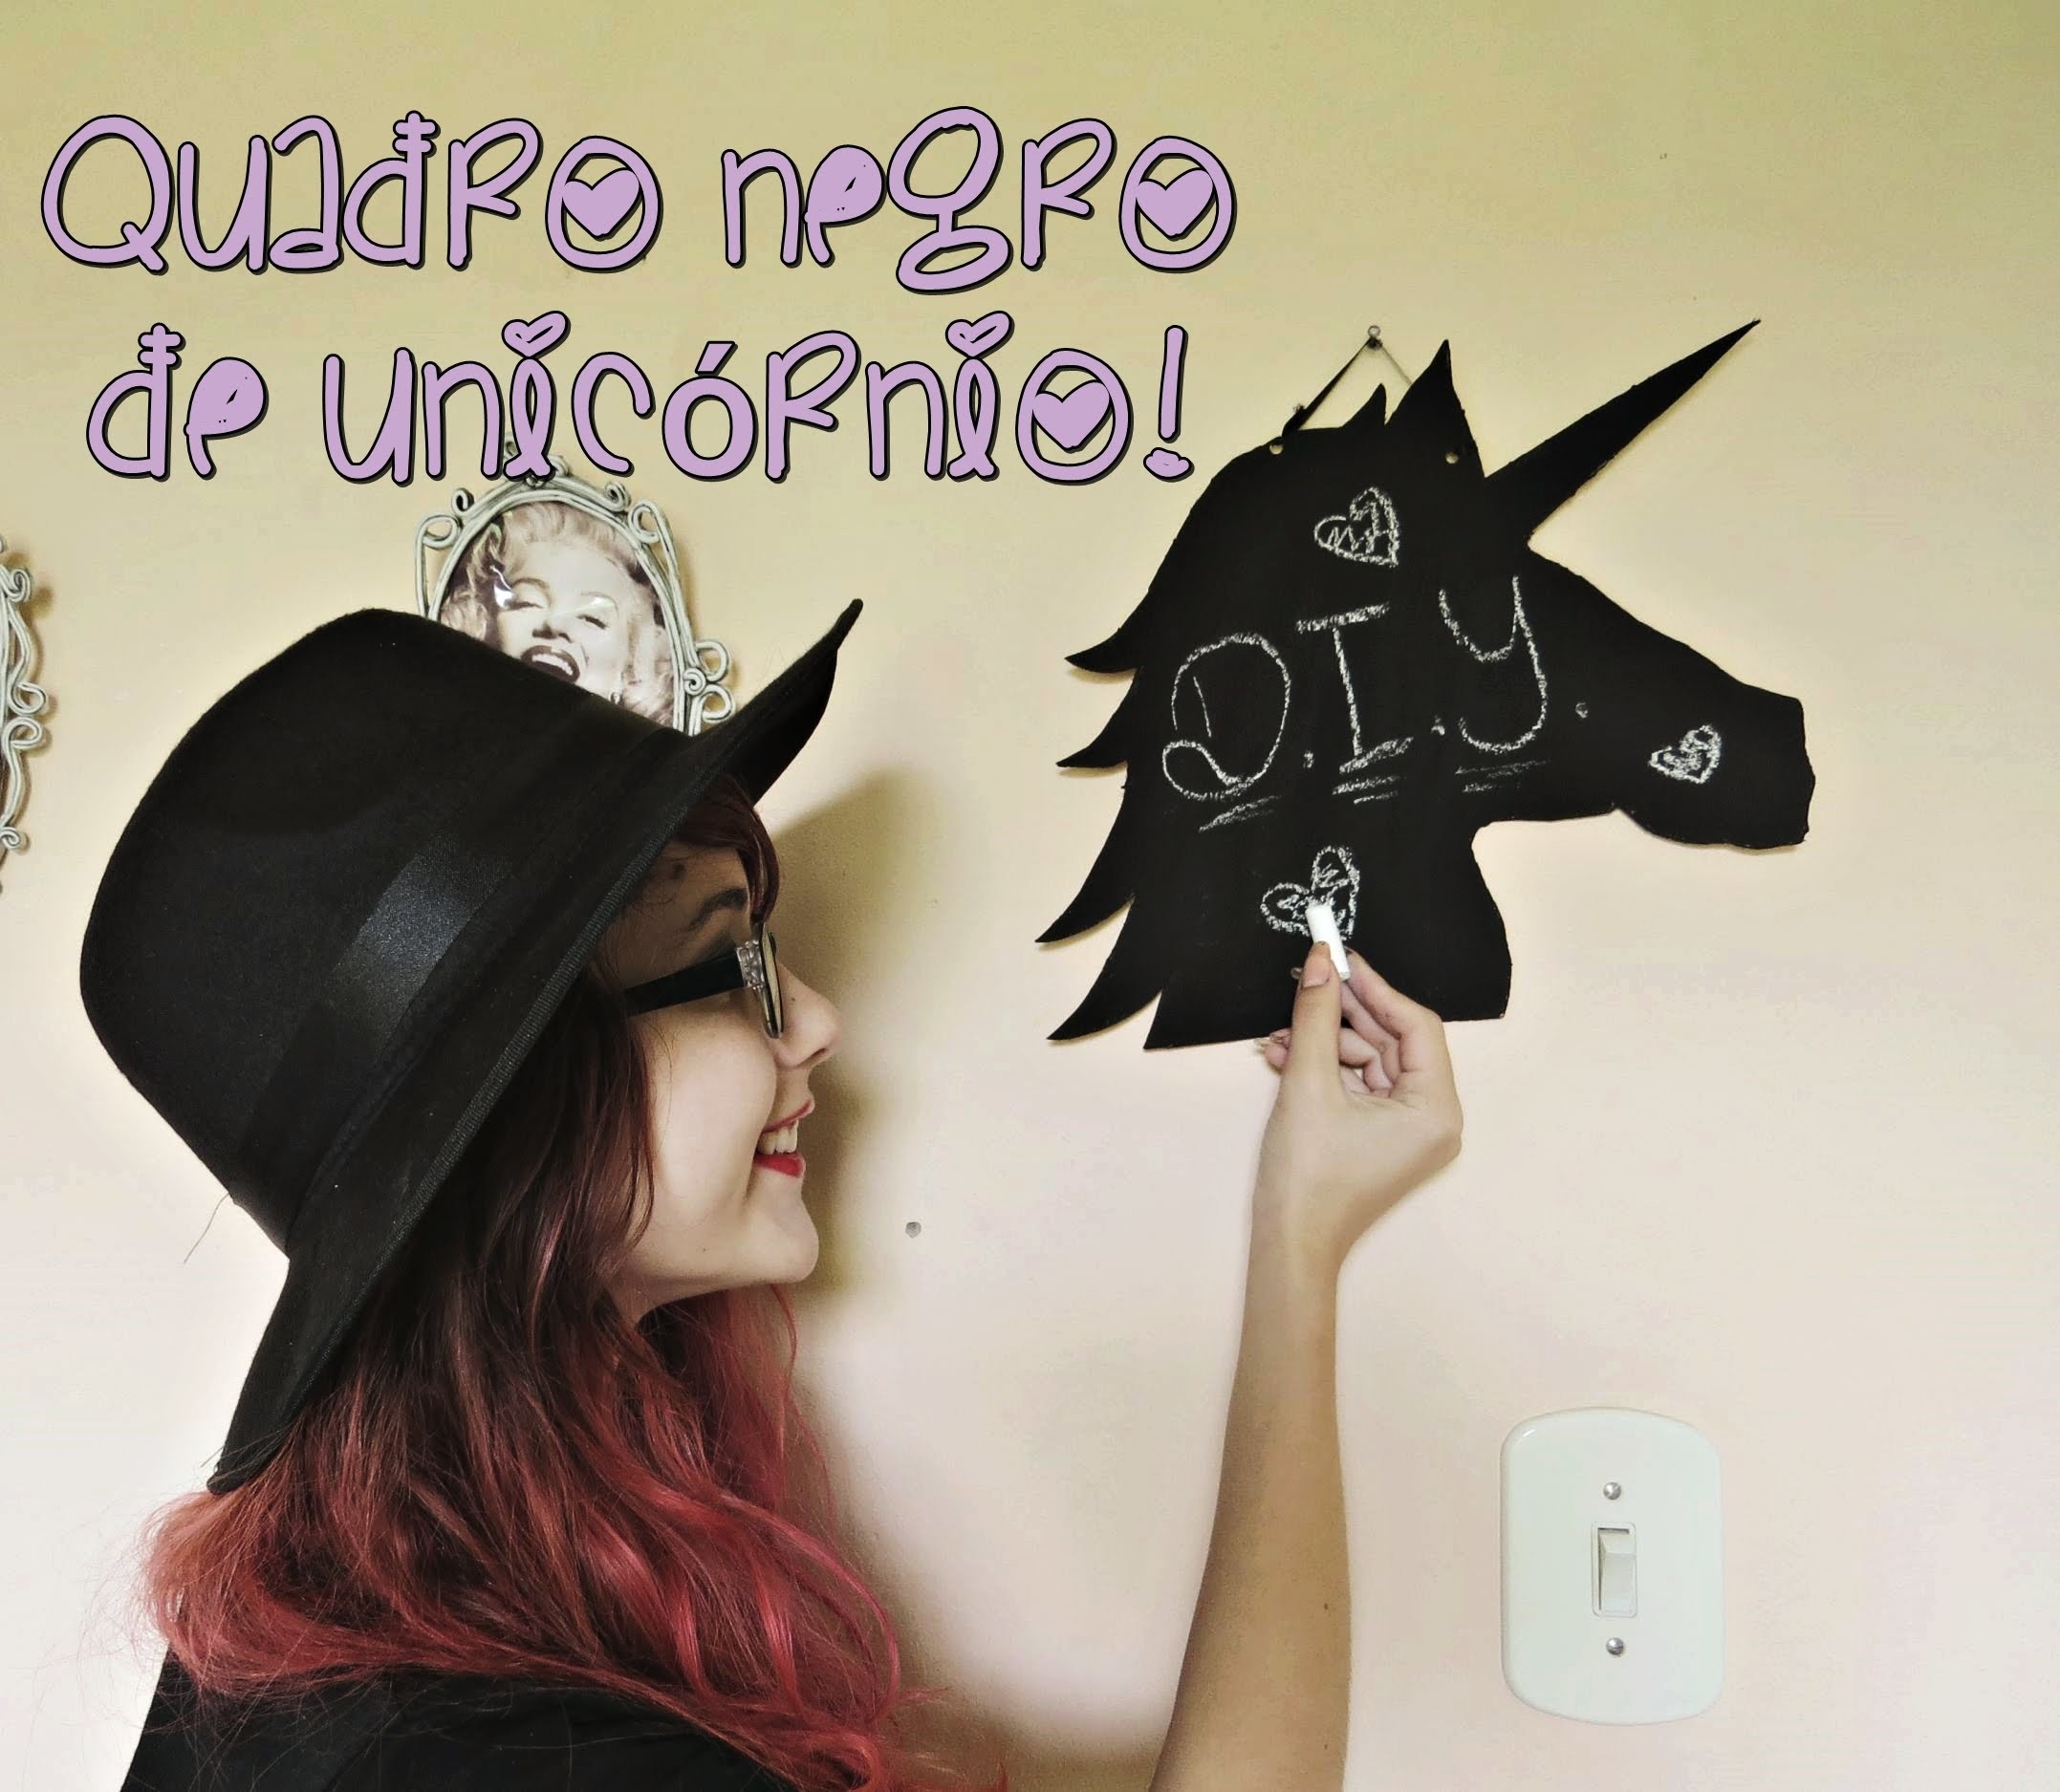 D.I.Y. Quadro-Negro de Unicórnio (Blackboard Unicorn)